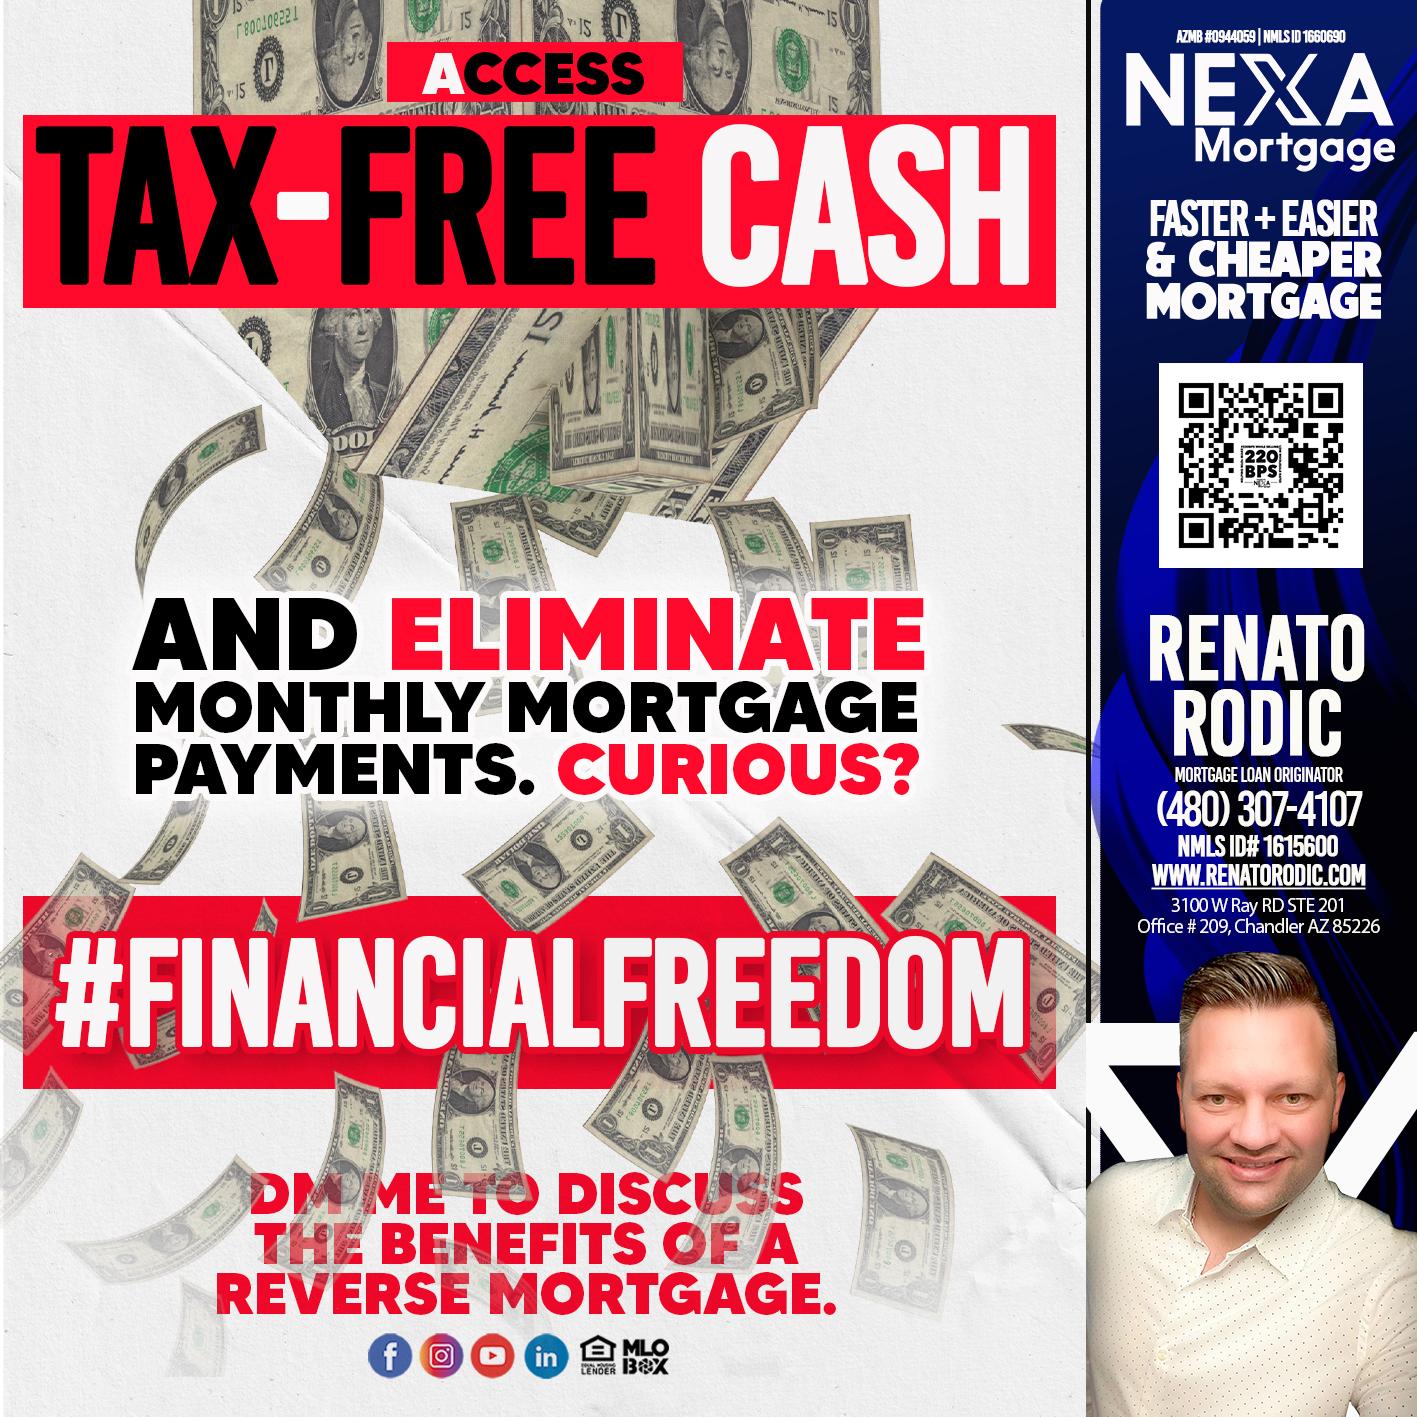 FREE TAX CASH - Renato Rodic -Mortgage Loan Originator